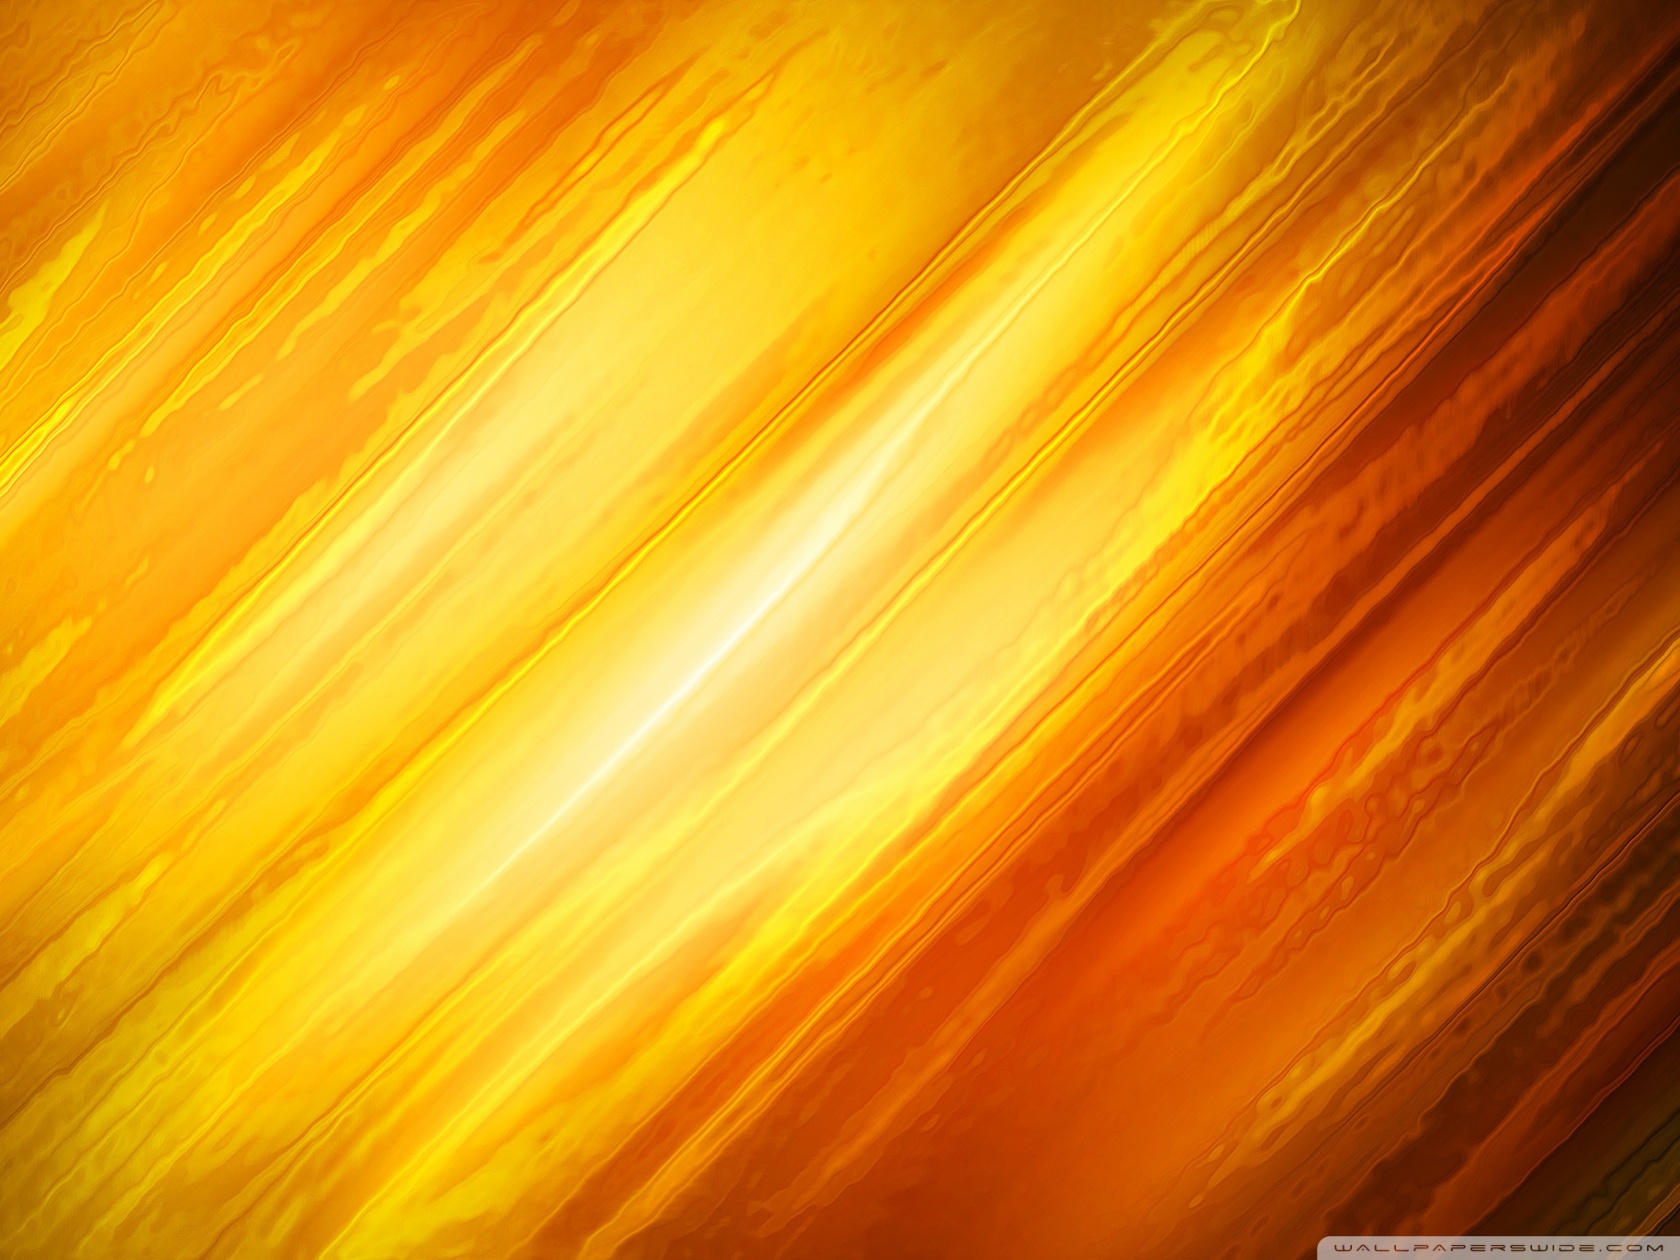 Fiery Image Ultra HD Desktop Background Wallpaper for 4K UHD TV : Multi ...